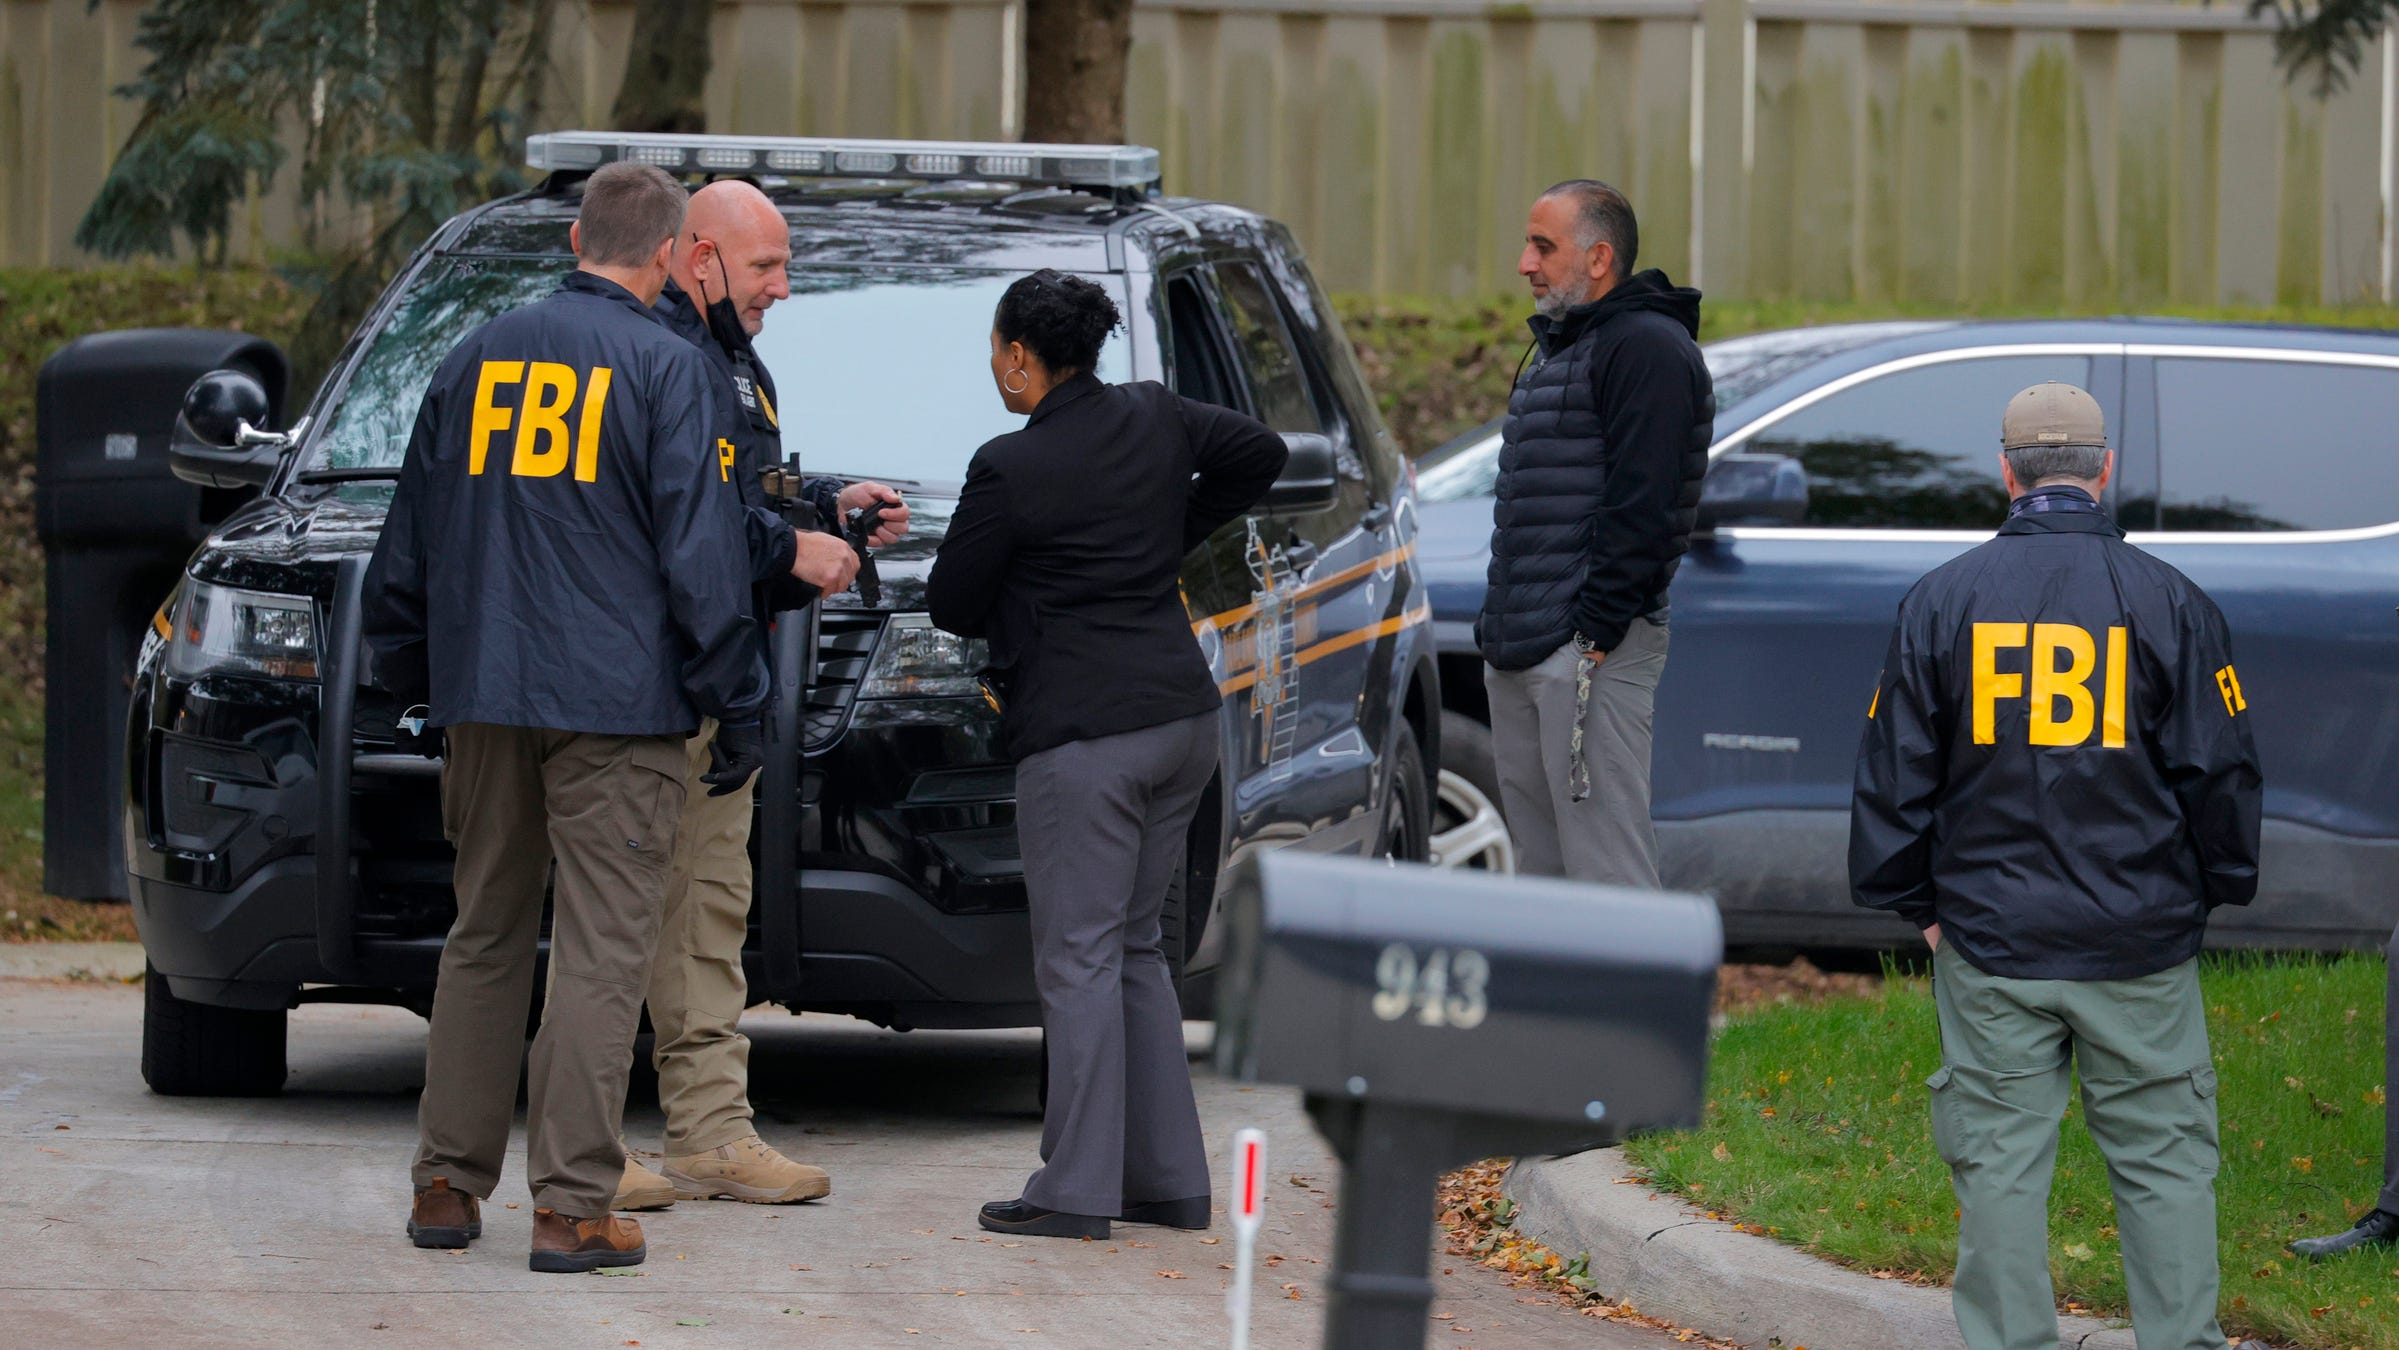 Detroit public corruption probe expands with Rochester Hills FBI raid